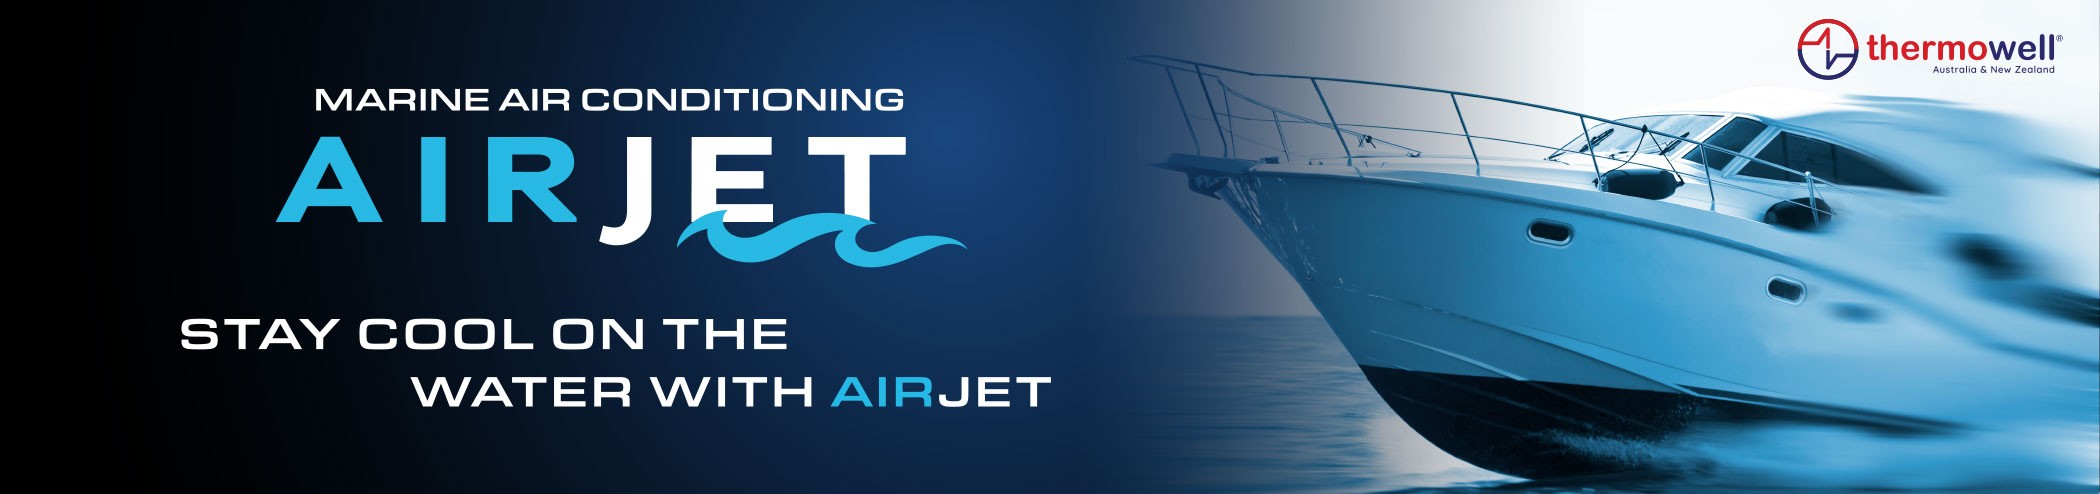 AirJet-header